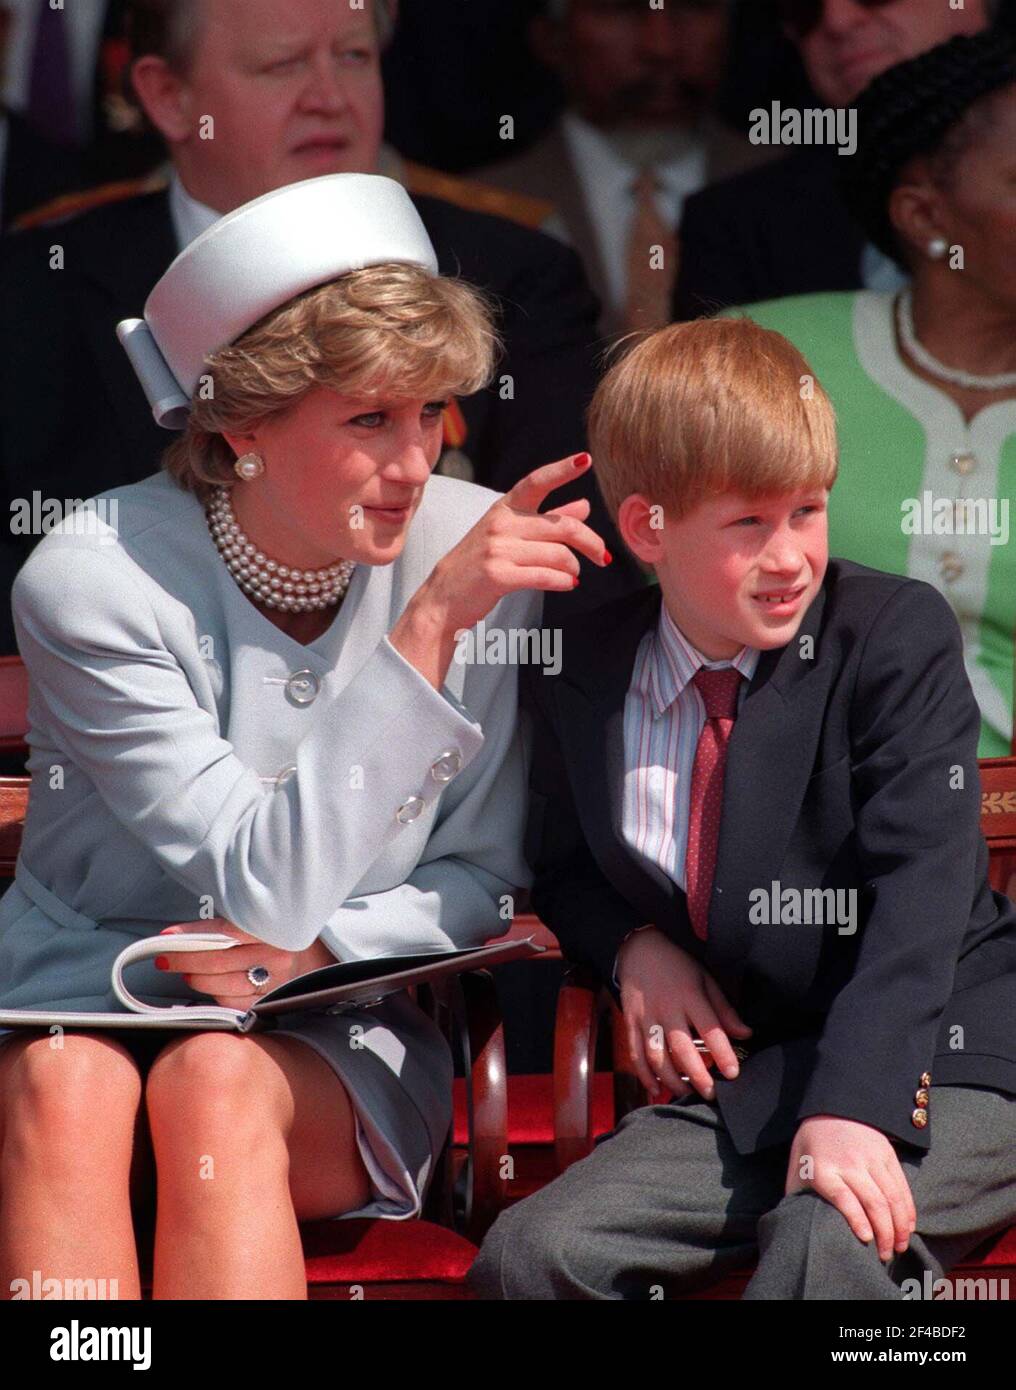 Photo du dossier datée du 7/5/1995 de la princesse de Galles avec son jeune fils le prince Harry. Le duc de Sussex a réfléchi à la douleur de la mort de sa mère dans une préface à un livre pour les enfants des travailleurs de la santé qui sont morts dans la pandémie. Harry écrivit la mort de Diana en 1997 quand il était âgé de 12 ans avait laissé Òa grand trou à l'intérieur de meÓ mais qu'il a finalement été rempli de 'l'amour et du soutien', selon les temps. Date de publication : samedi 20 mars 2021. Banque D'Images